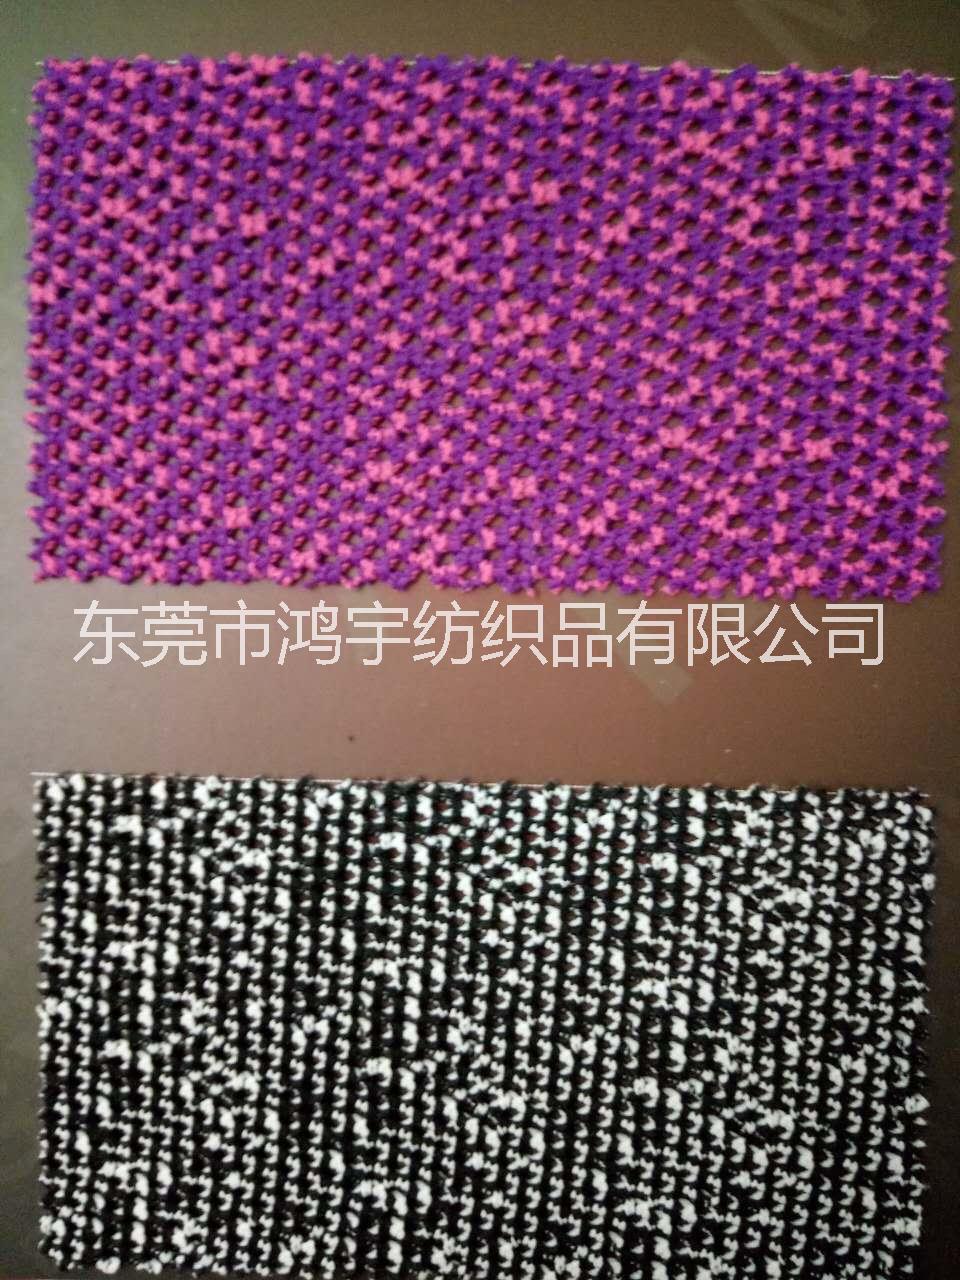 供应用于鞋材的三明治网布厂家广东东莞深圳三明治网布供应报价